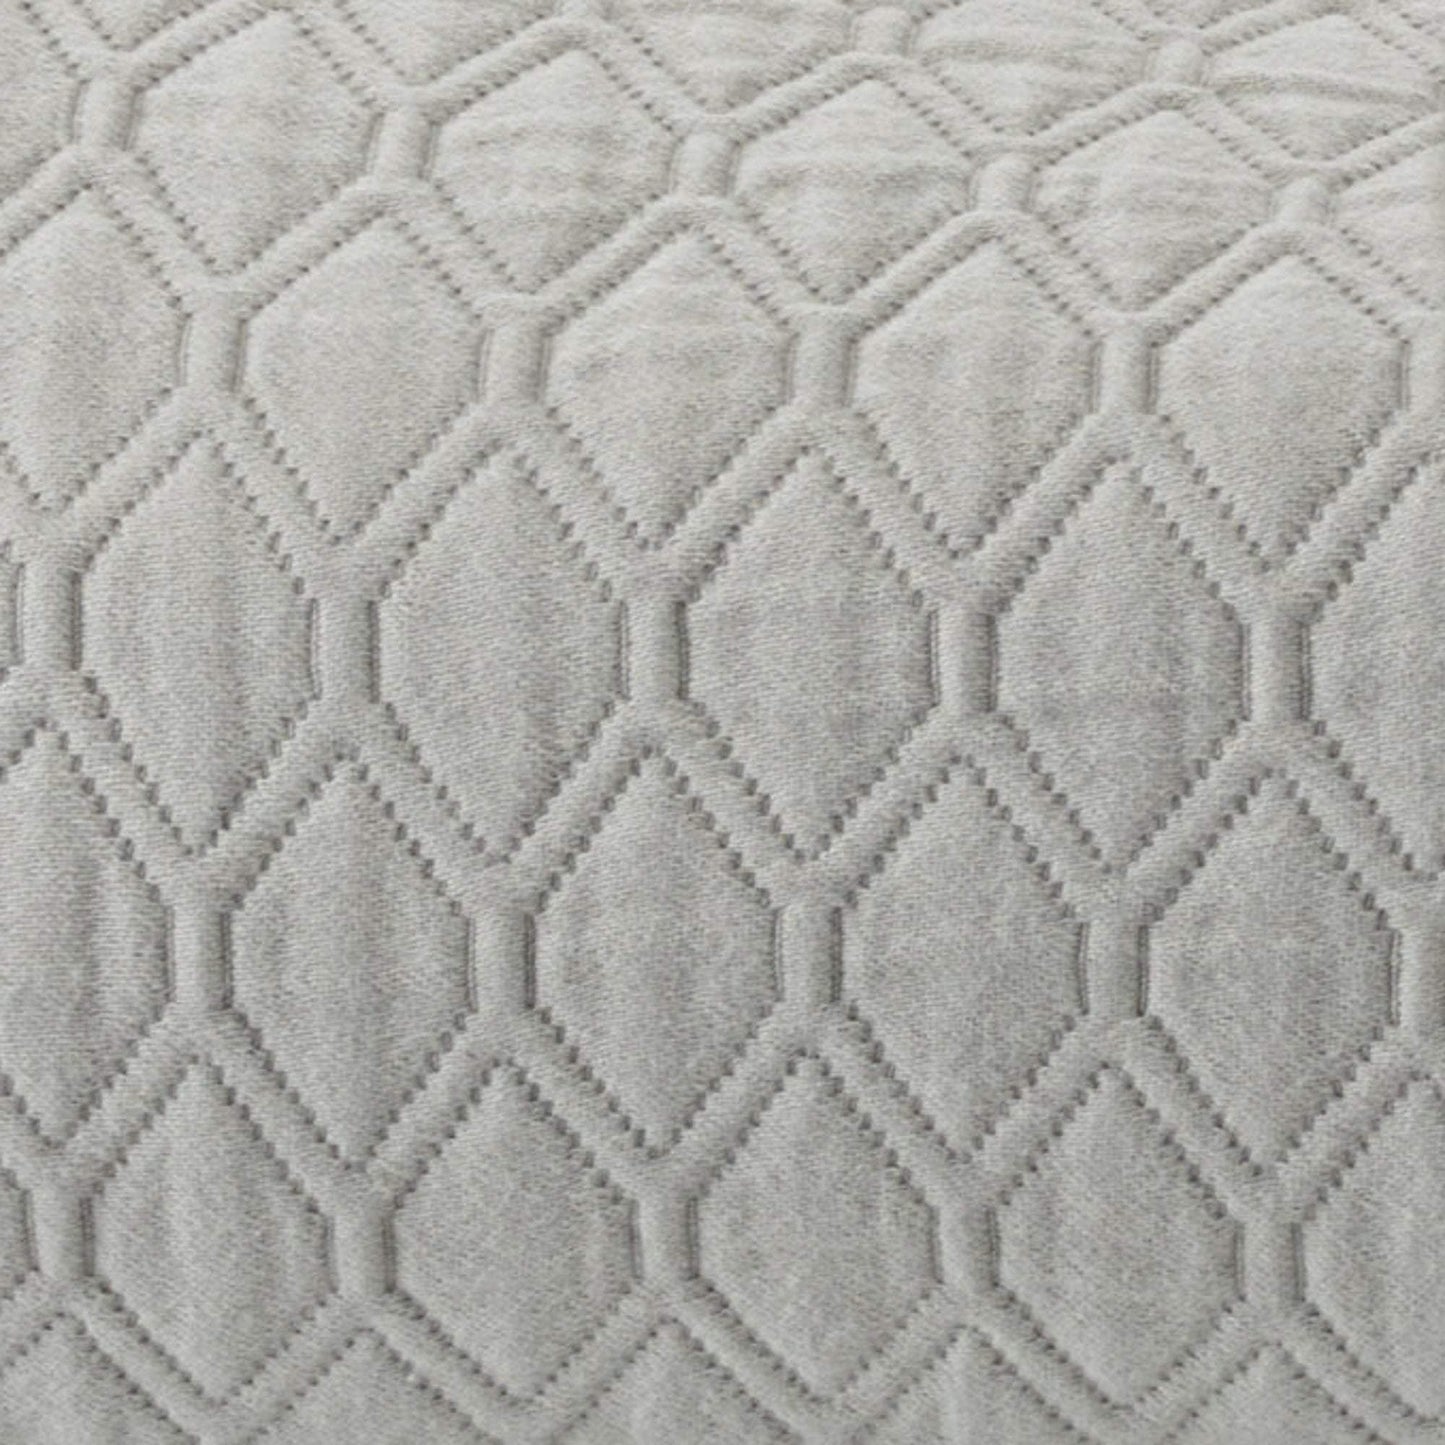 Vera Wang Comforter/Quilt/Duvet Grey / Queen - 234cm x 244cm Puckered Diamond Matelasse Steel Coverlet - 1 Piece